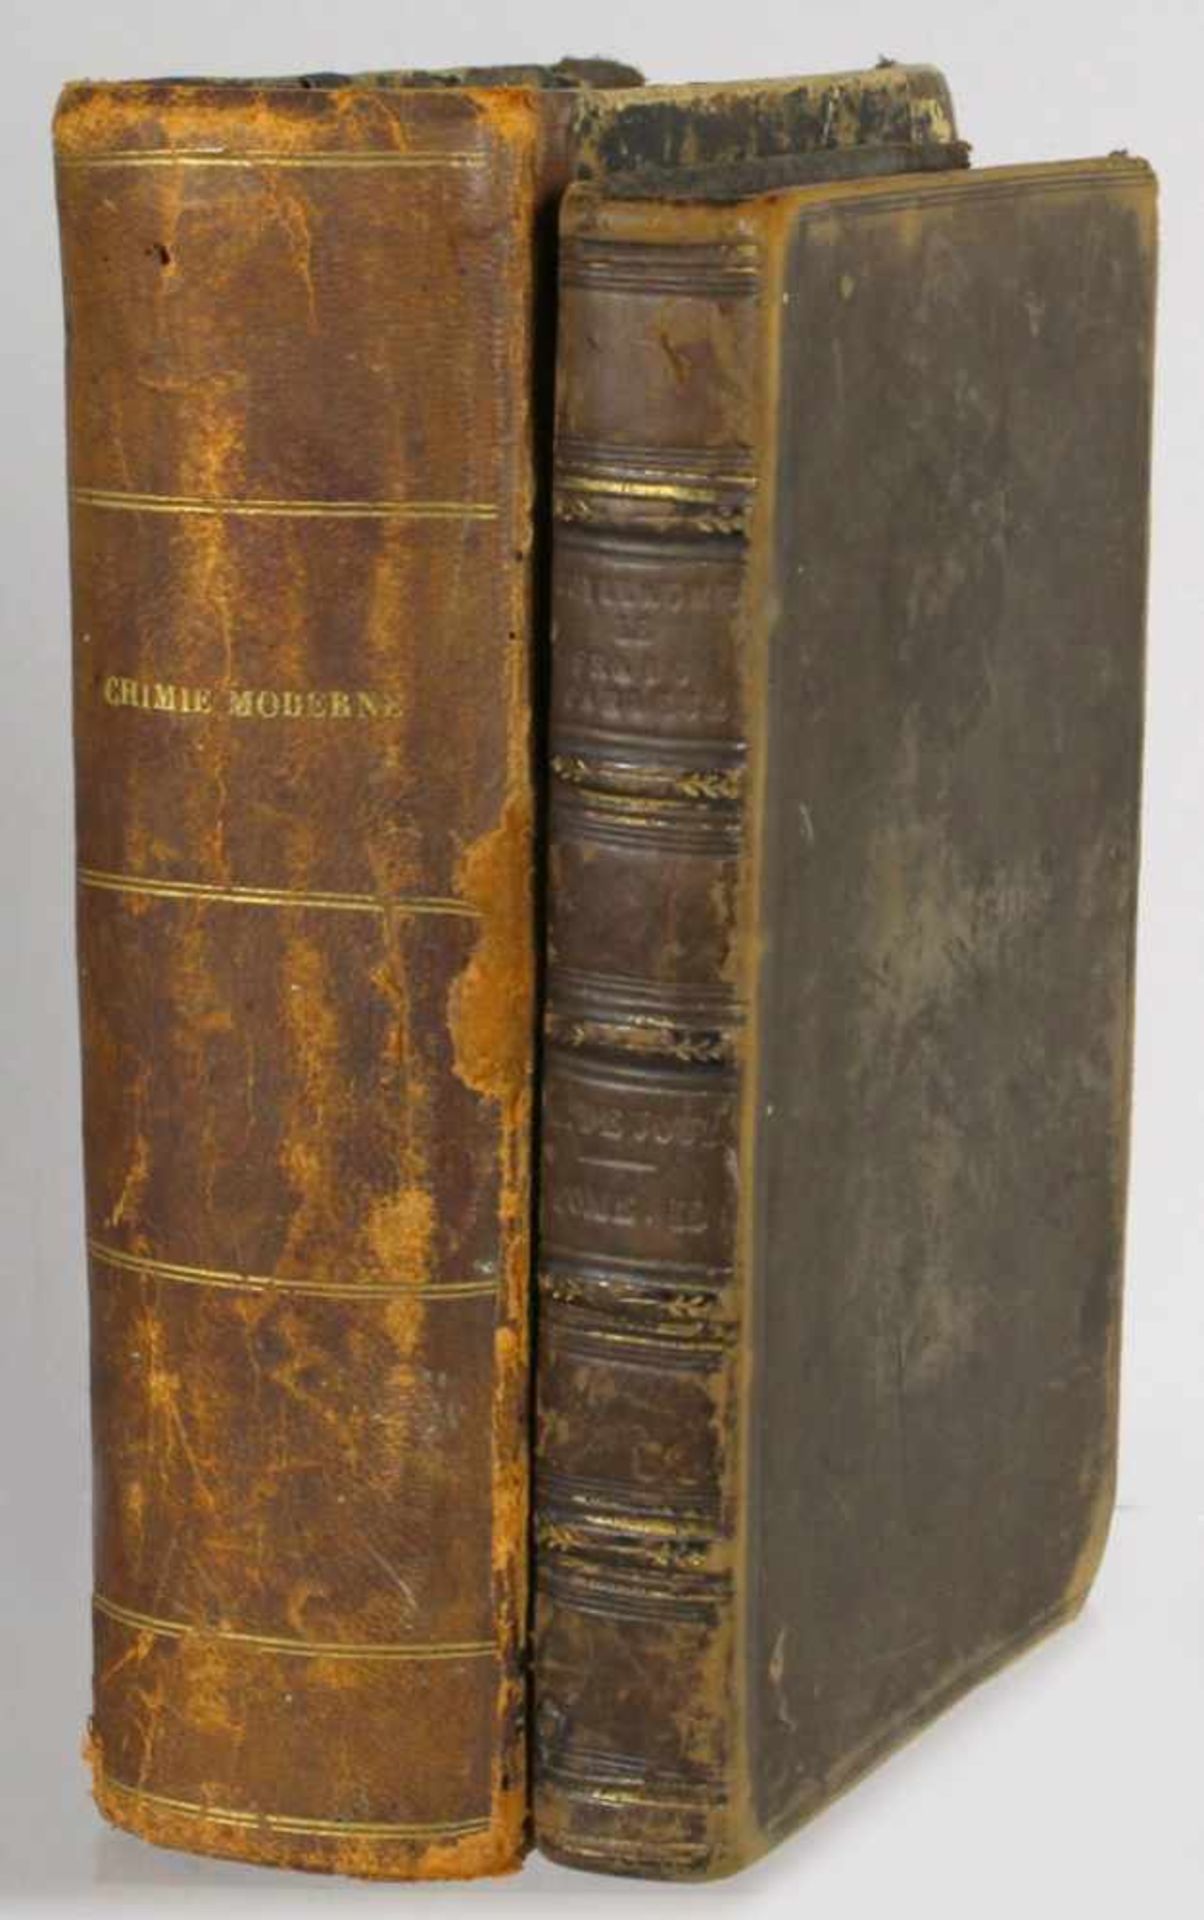 Zwei Bücher, "Guillaume le Franc-Parleur", 1817 und "Chimie Moderne", Paris, 1884,gebrauchter